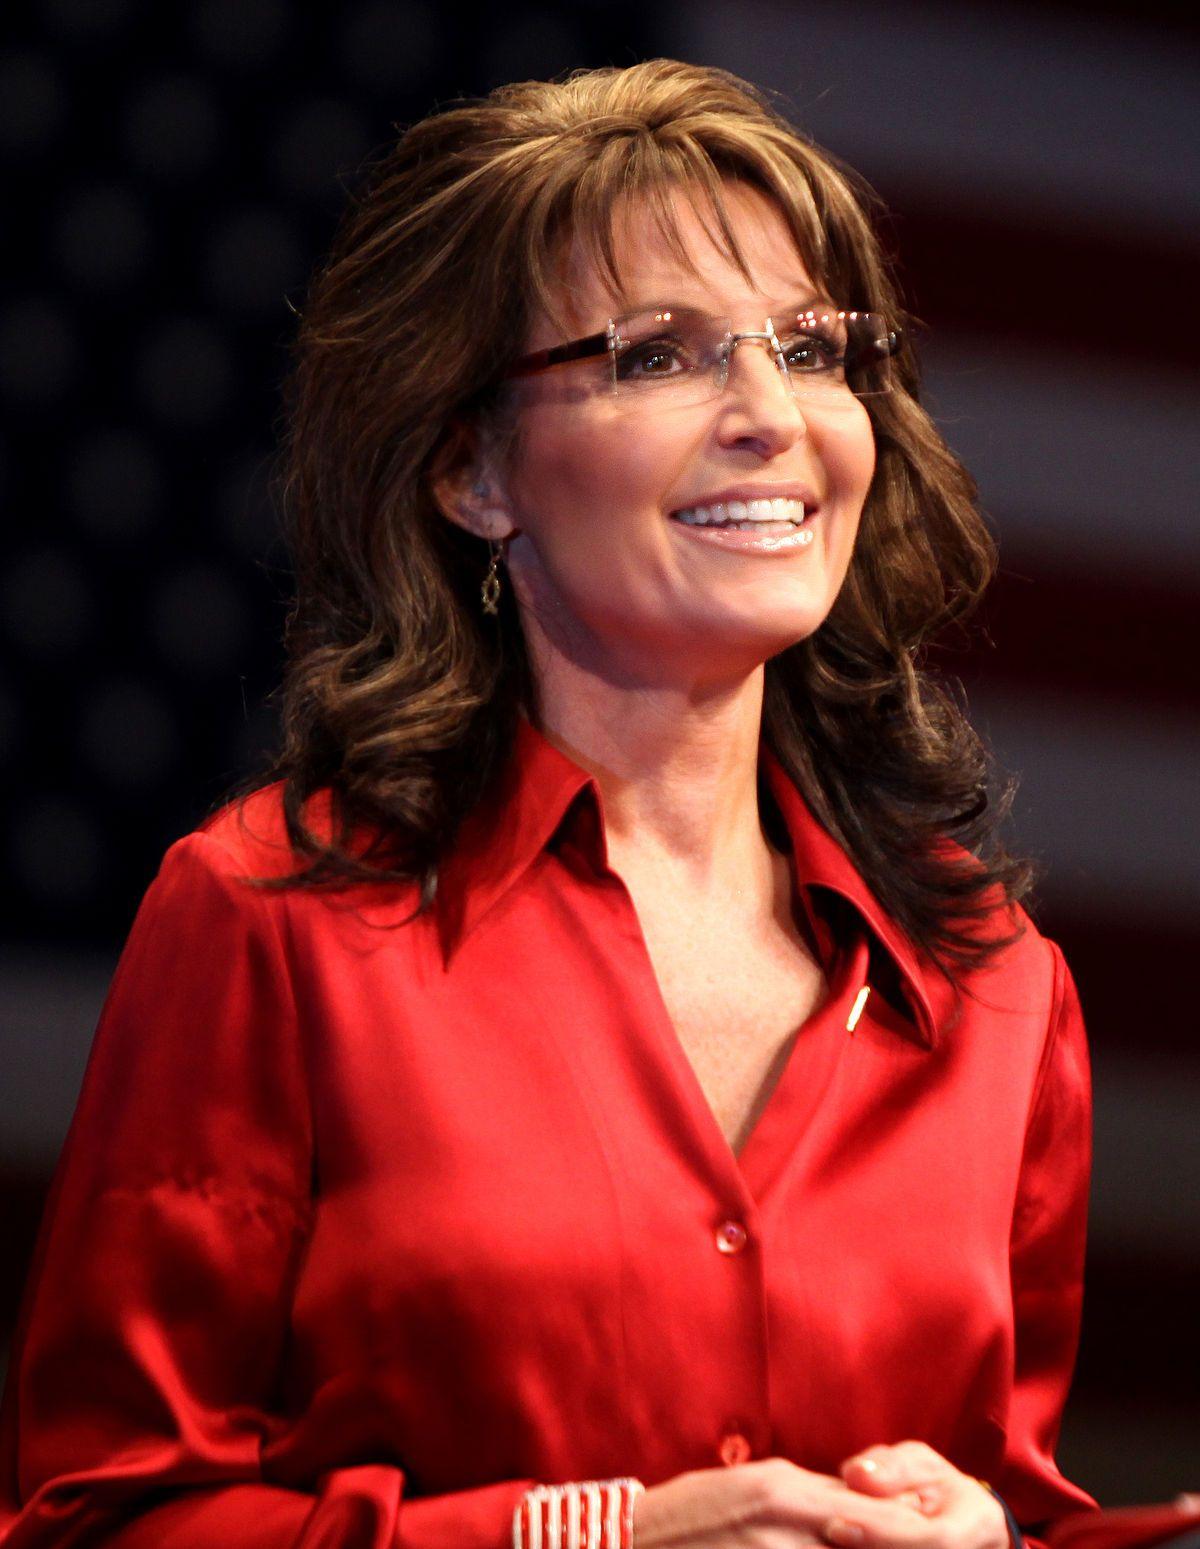 Sarah Palin Hot Bikini Image, Photo